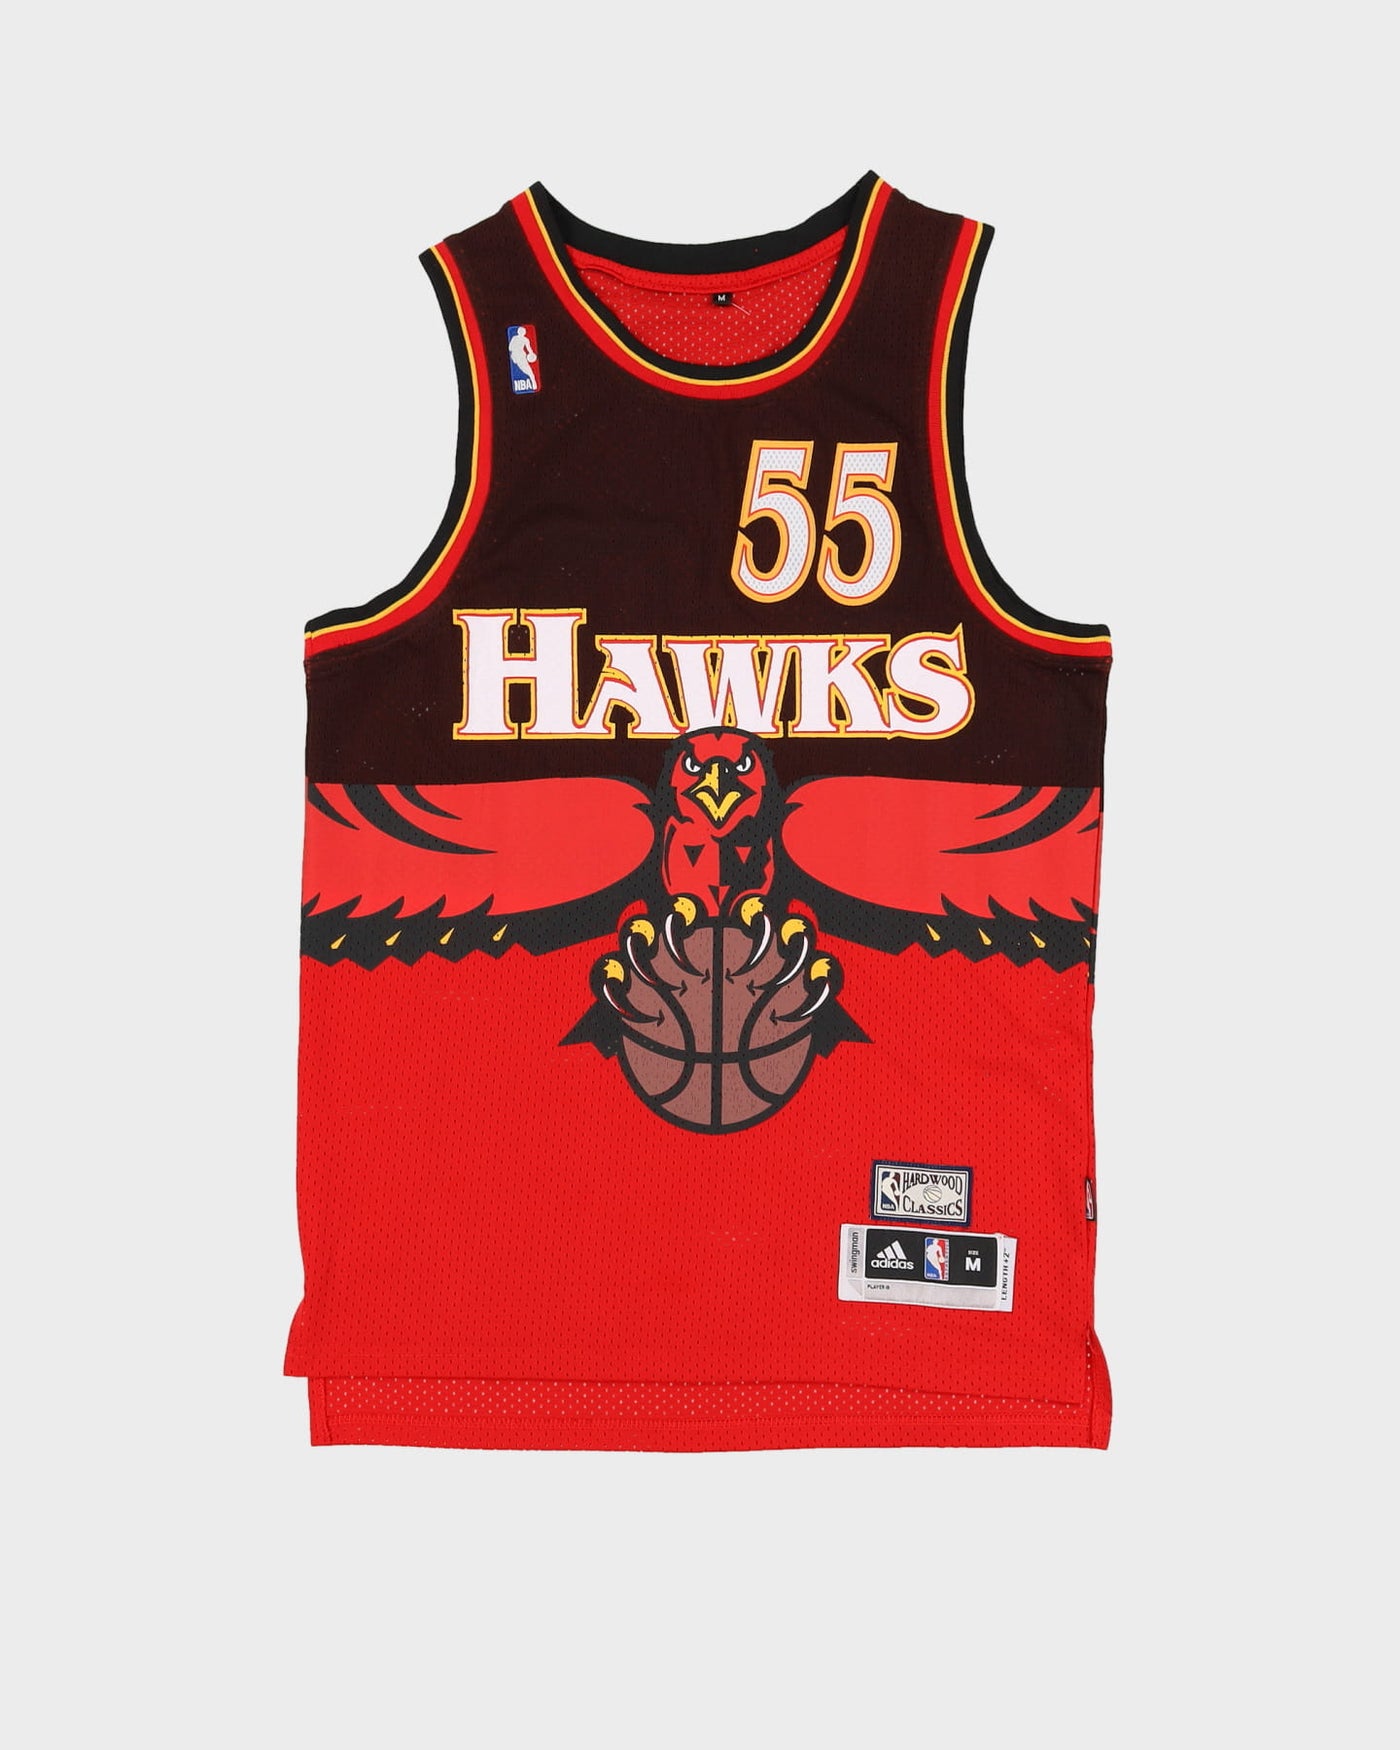 Dikembe Mutombo #55 Atlanta Hawks Basketball Jersey - M / L